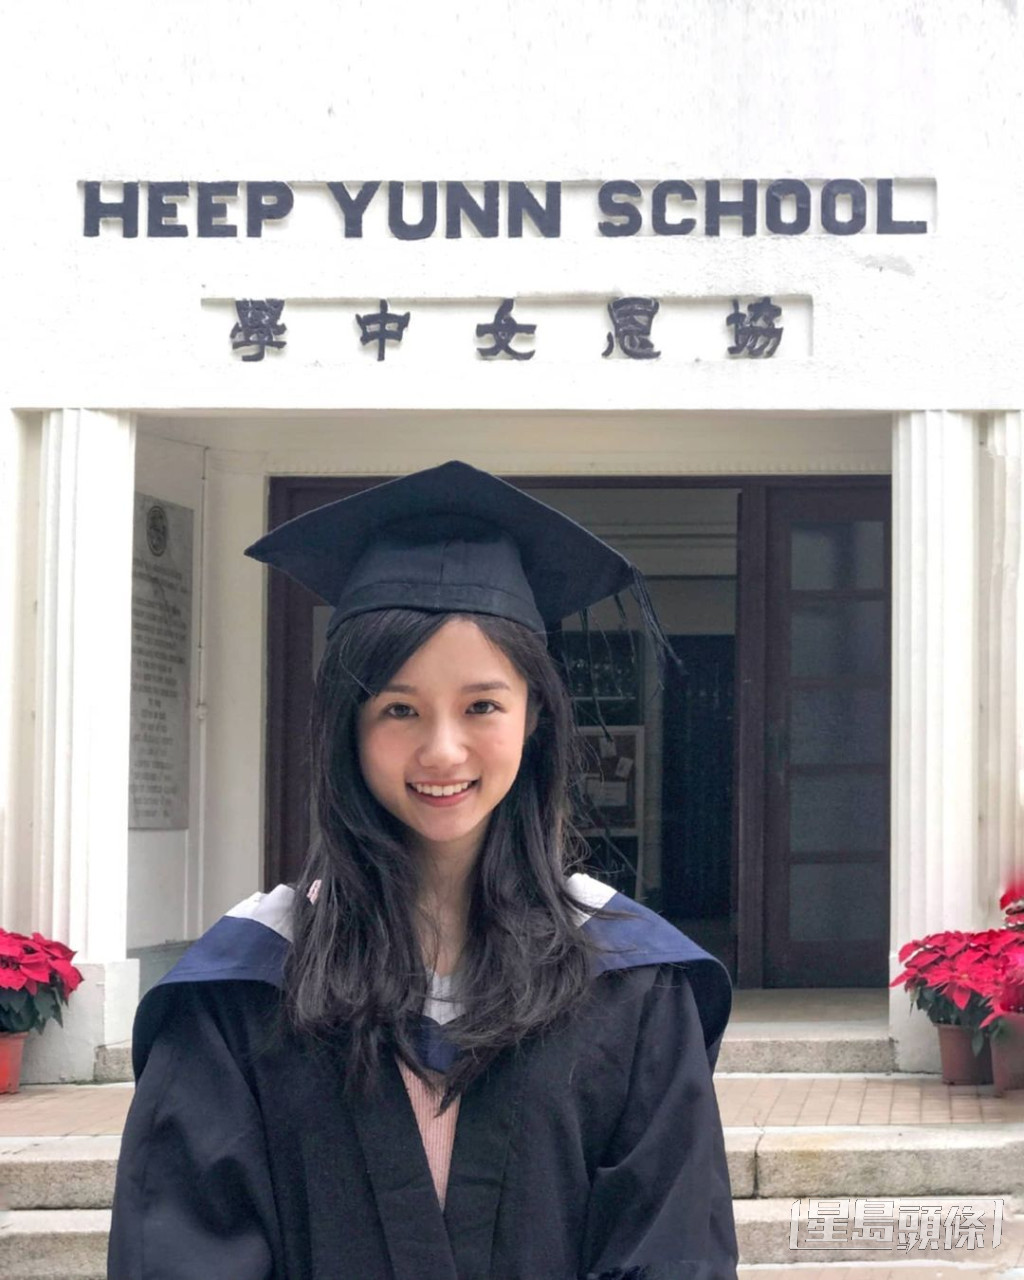 加入TVB後仍邊拍劇邊讚書，繼續在香港大學修讀建築碩士課程，於2021年宣佈畢業。 ​  ​